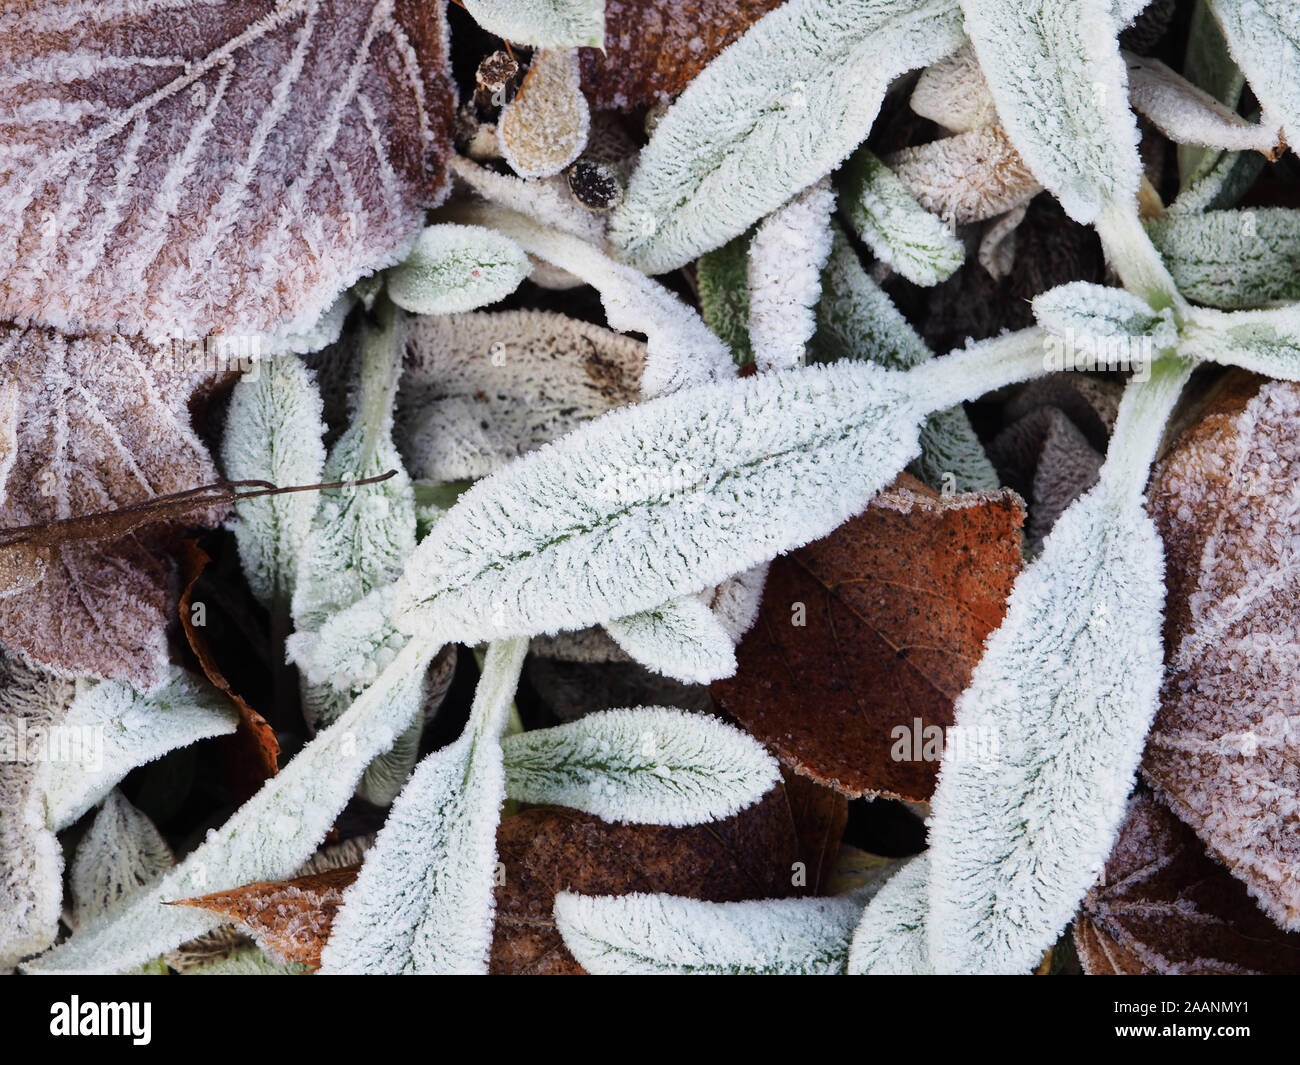 Gefrorene Blätter. Textur von einigen Blättern bedeckt von Schnee und Eis an einem Wintertag. Hintergrund der Fall tote Blätter, Gras mattiert, Unkraut und Blätter. Stockfoto